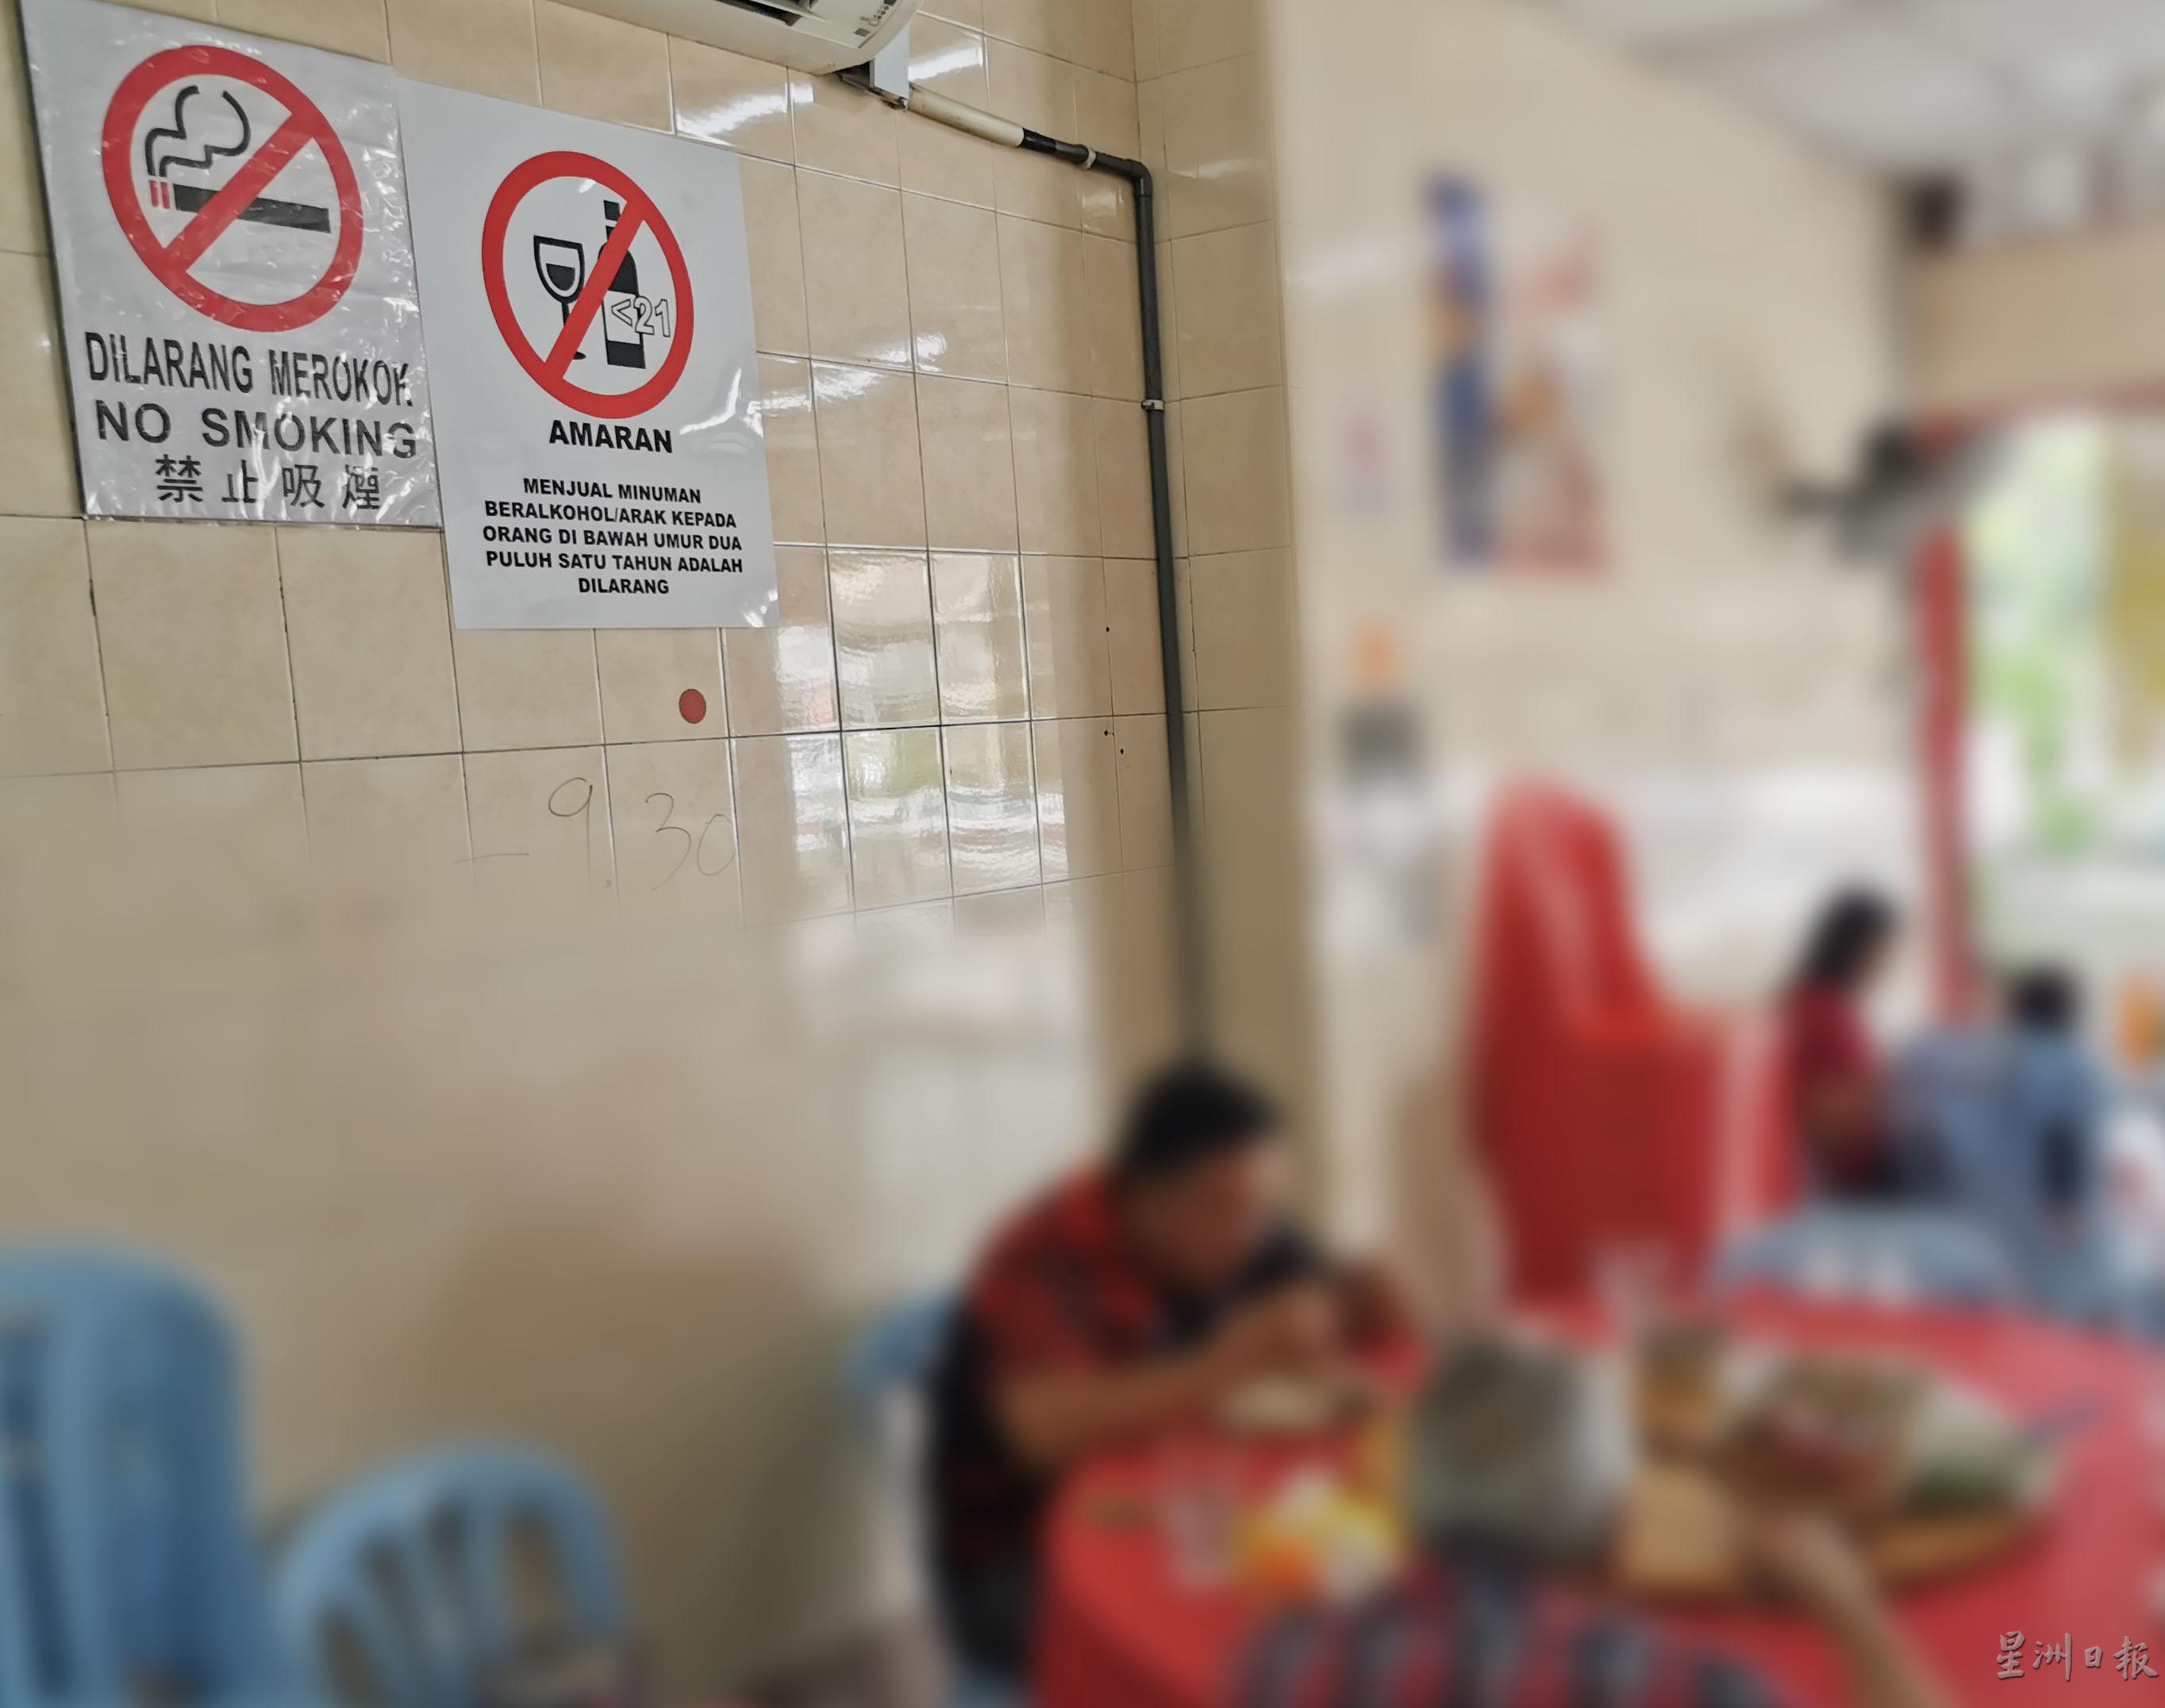 食肆业者必须张贴禁烟告示，否则将会中罚单。